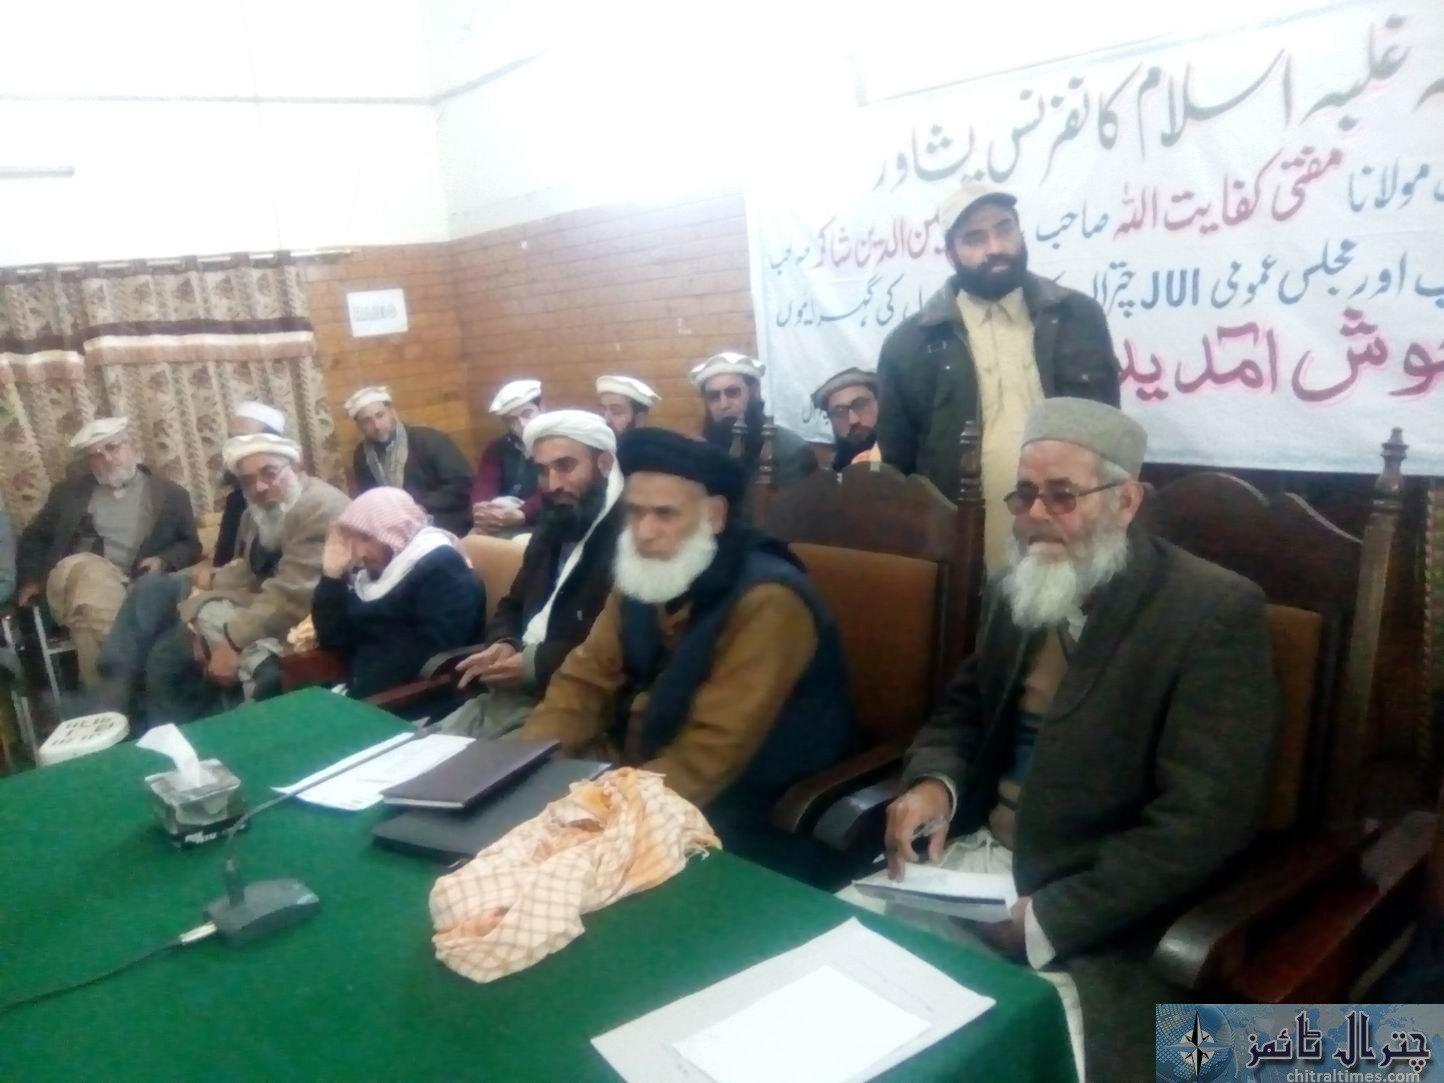 جے یو آئی کے زیر اہتمام ضلع کونسل ہال چترال میں متوقع ” غلبہ اسلام کانفرنس “کے سلسلے میں اجلاس